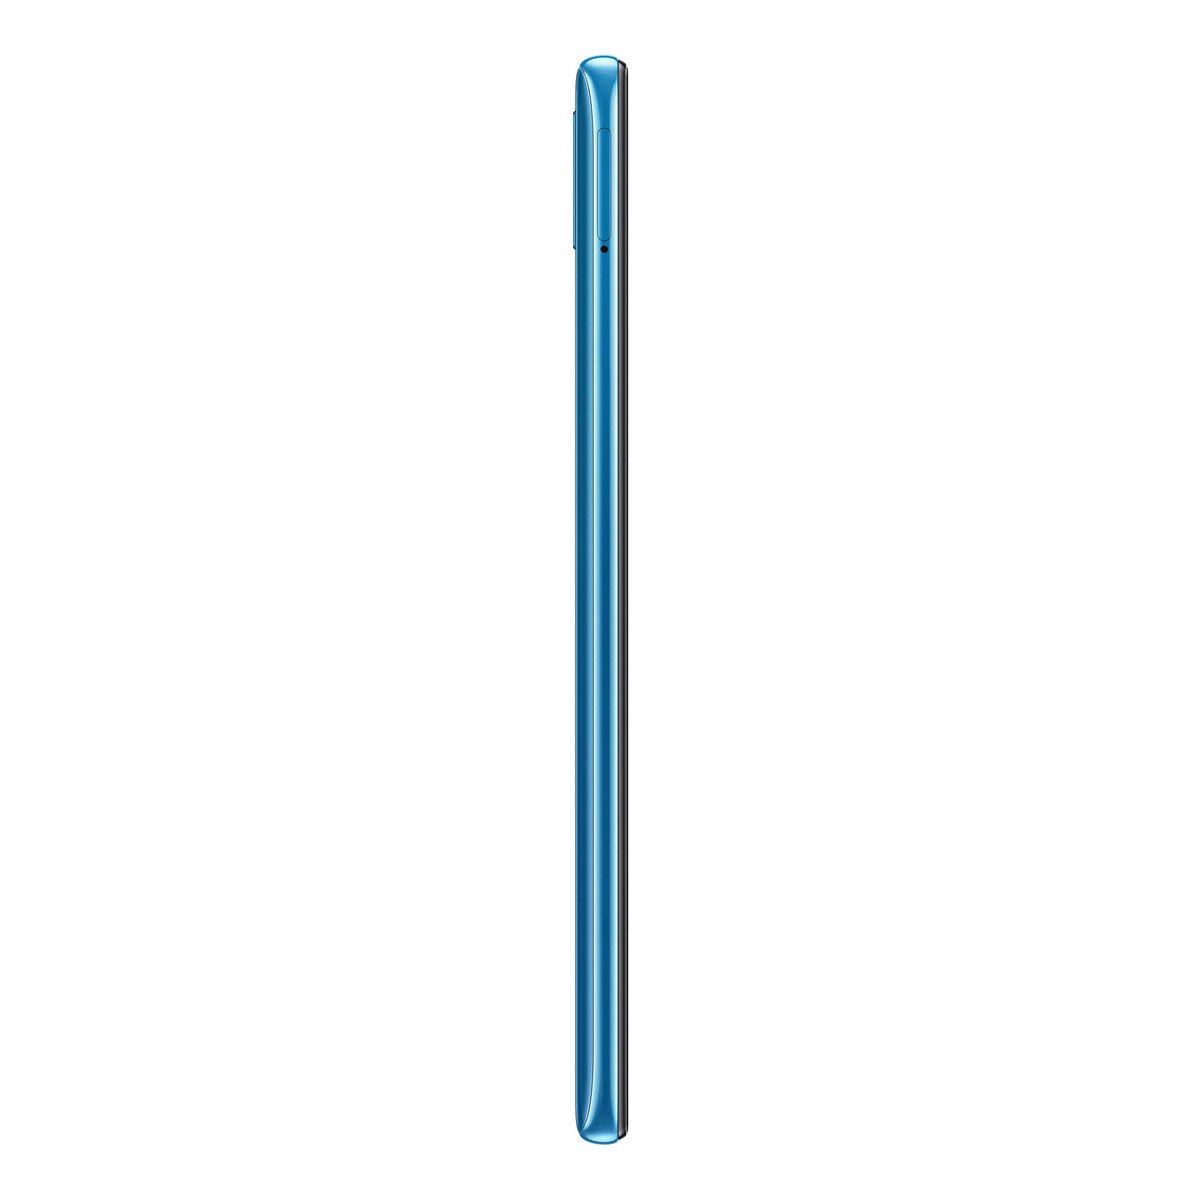 Samsung Galaxy A30 SM-A305 64GB Blue